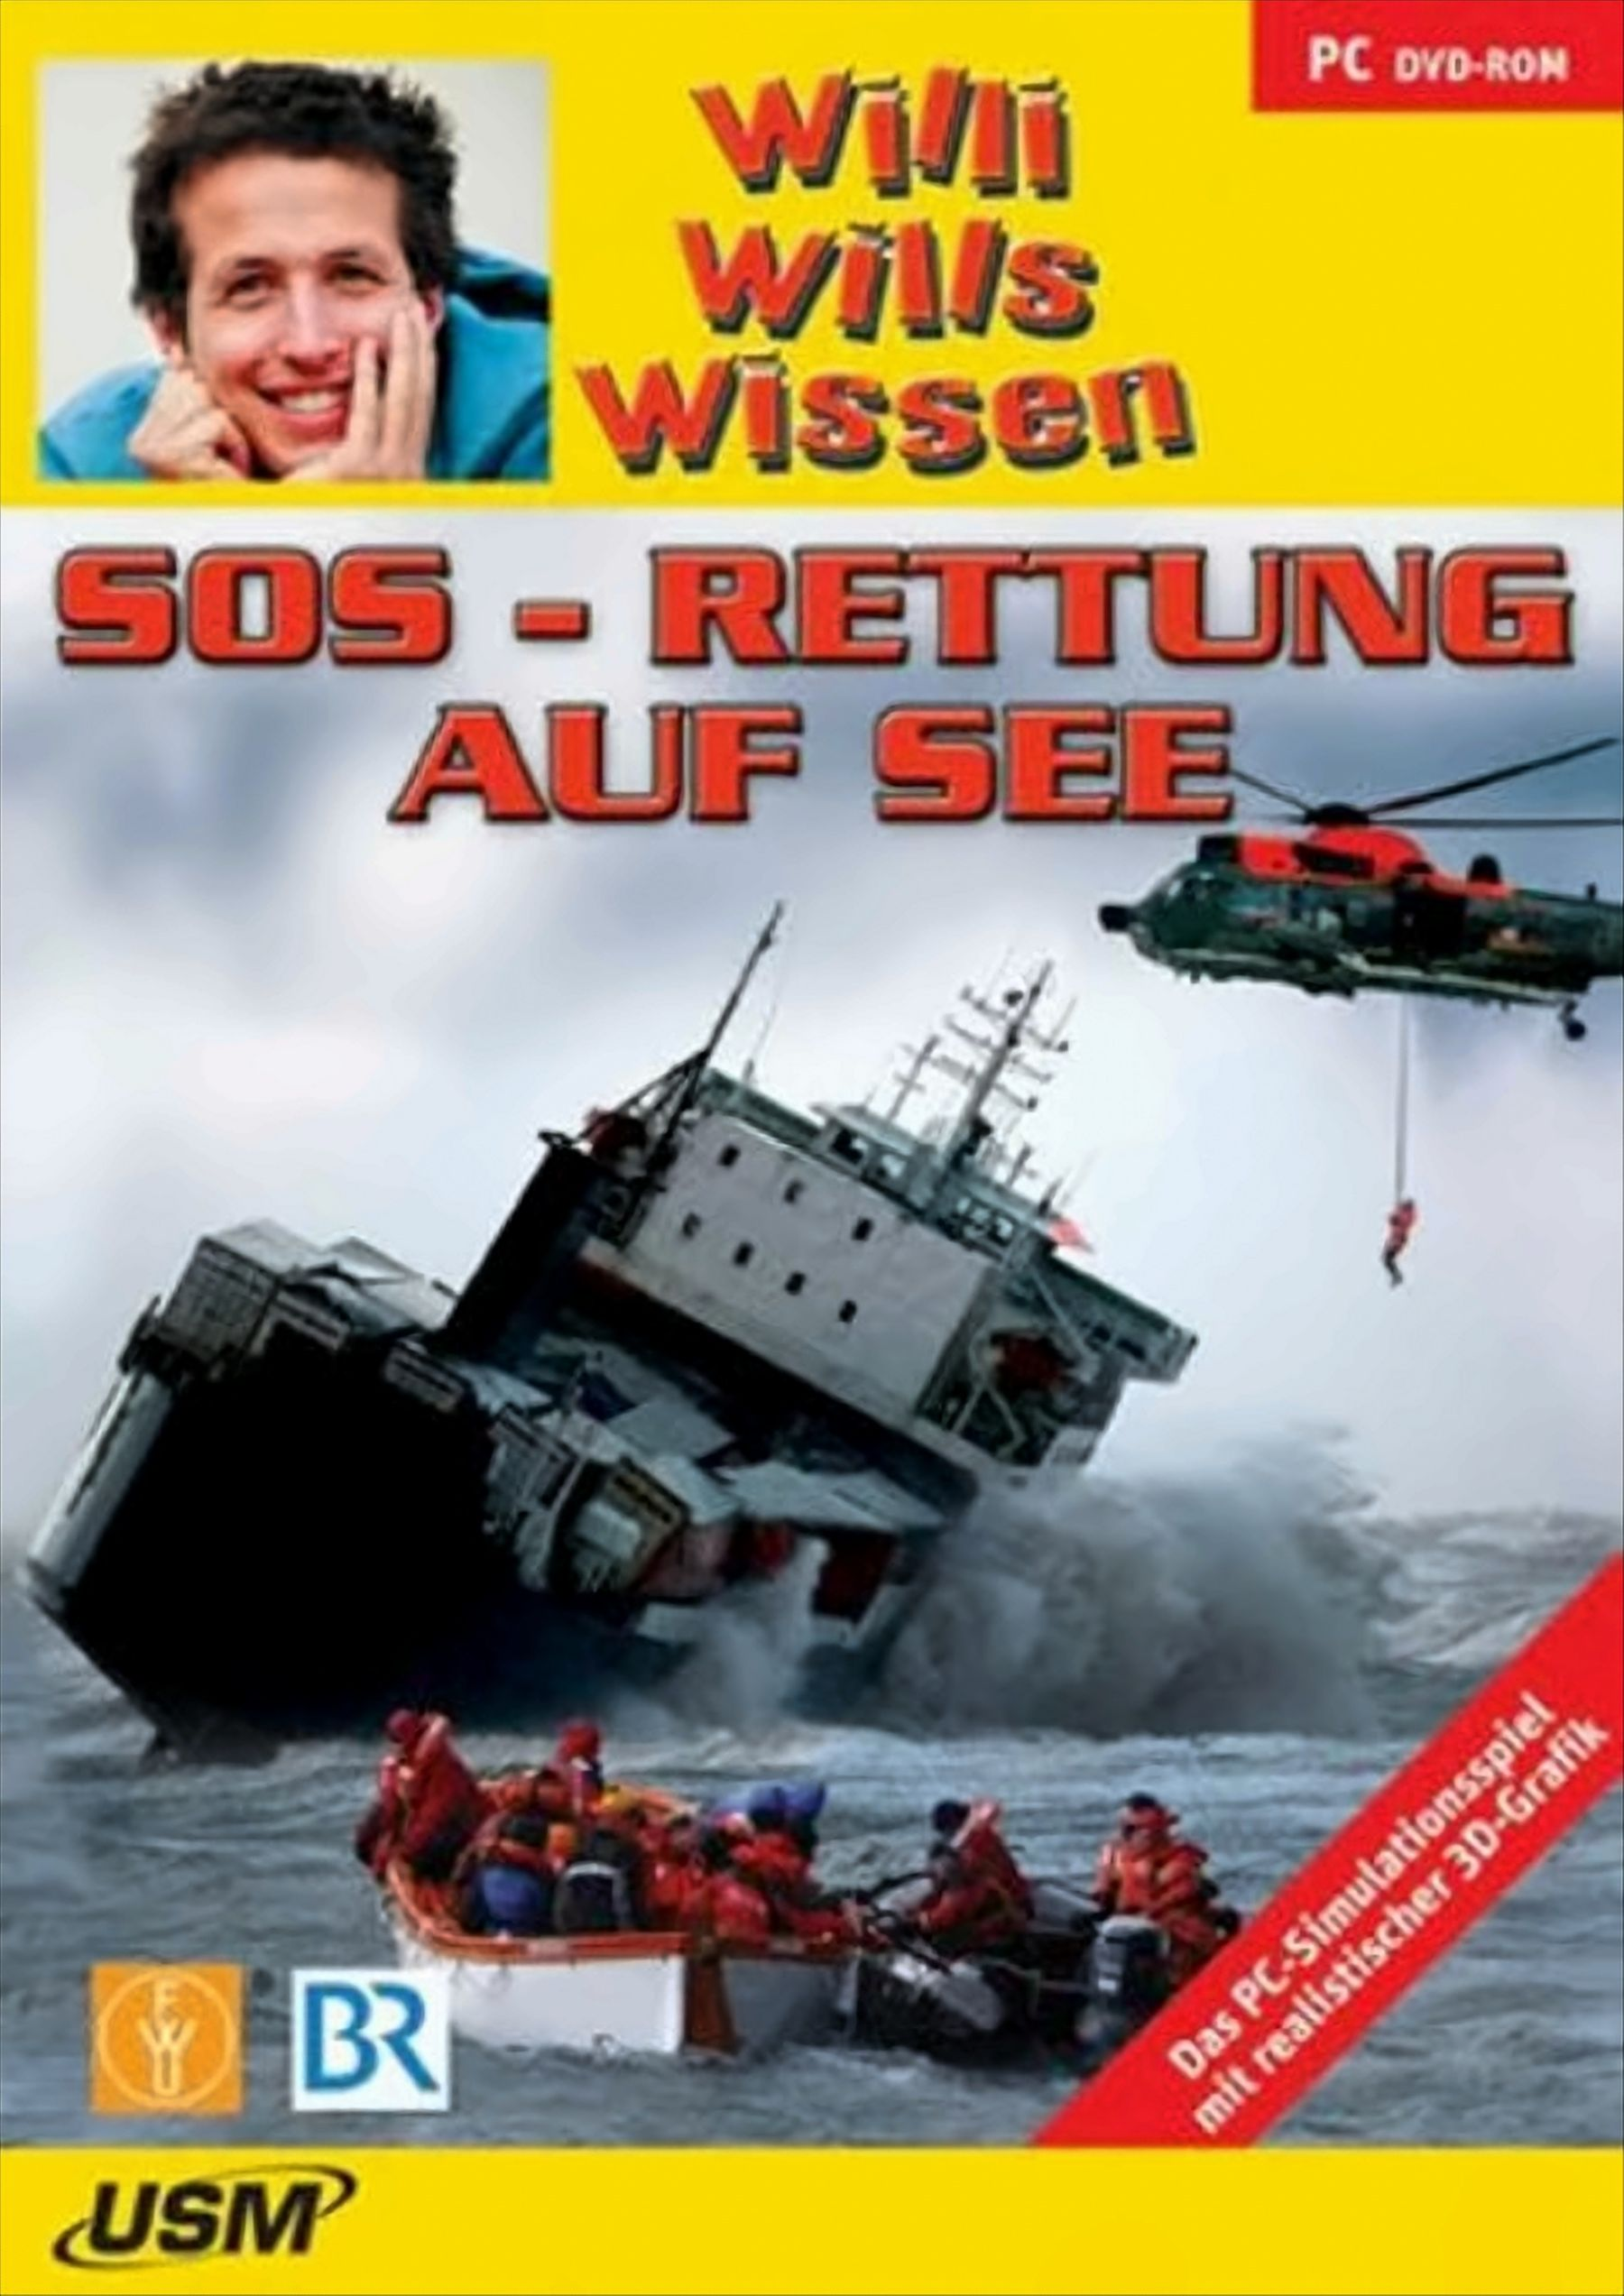 Willi wills wissen: - (DVD-ROM) auf SOS See [PC] - Rettung